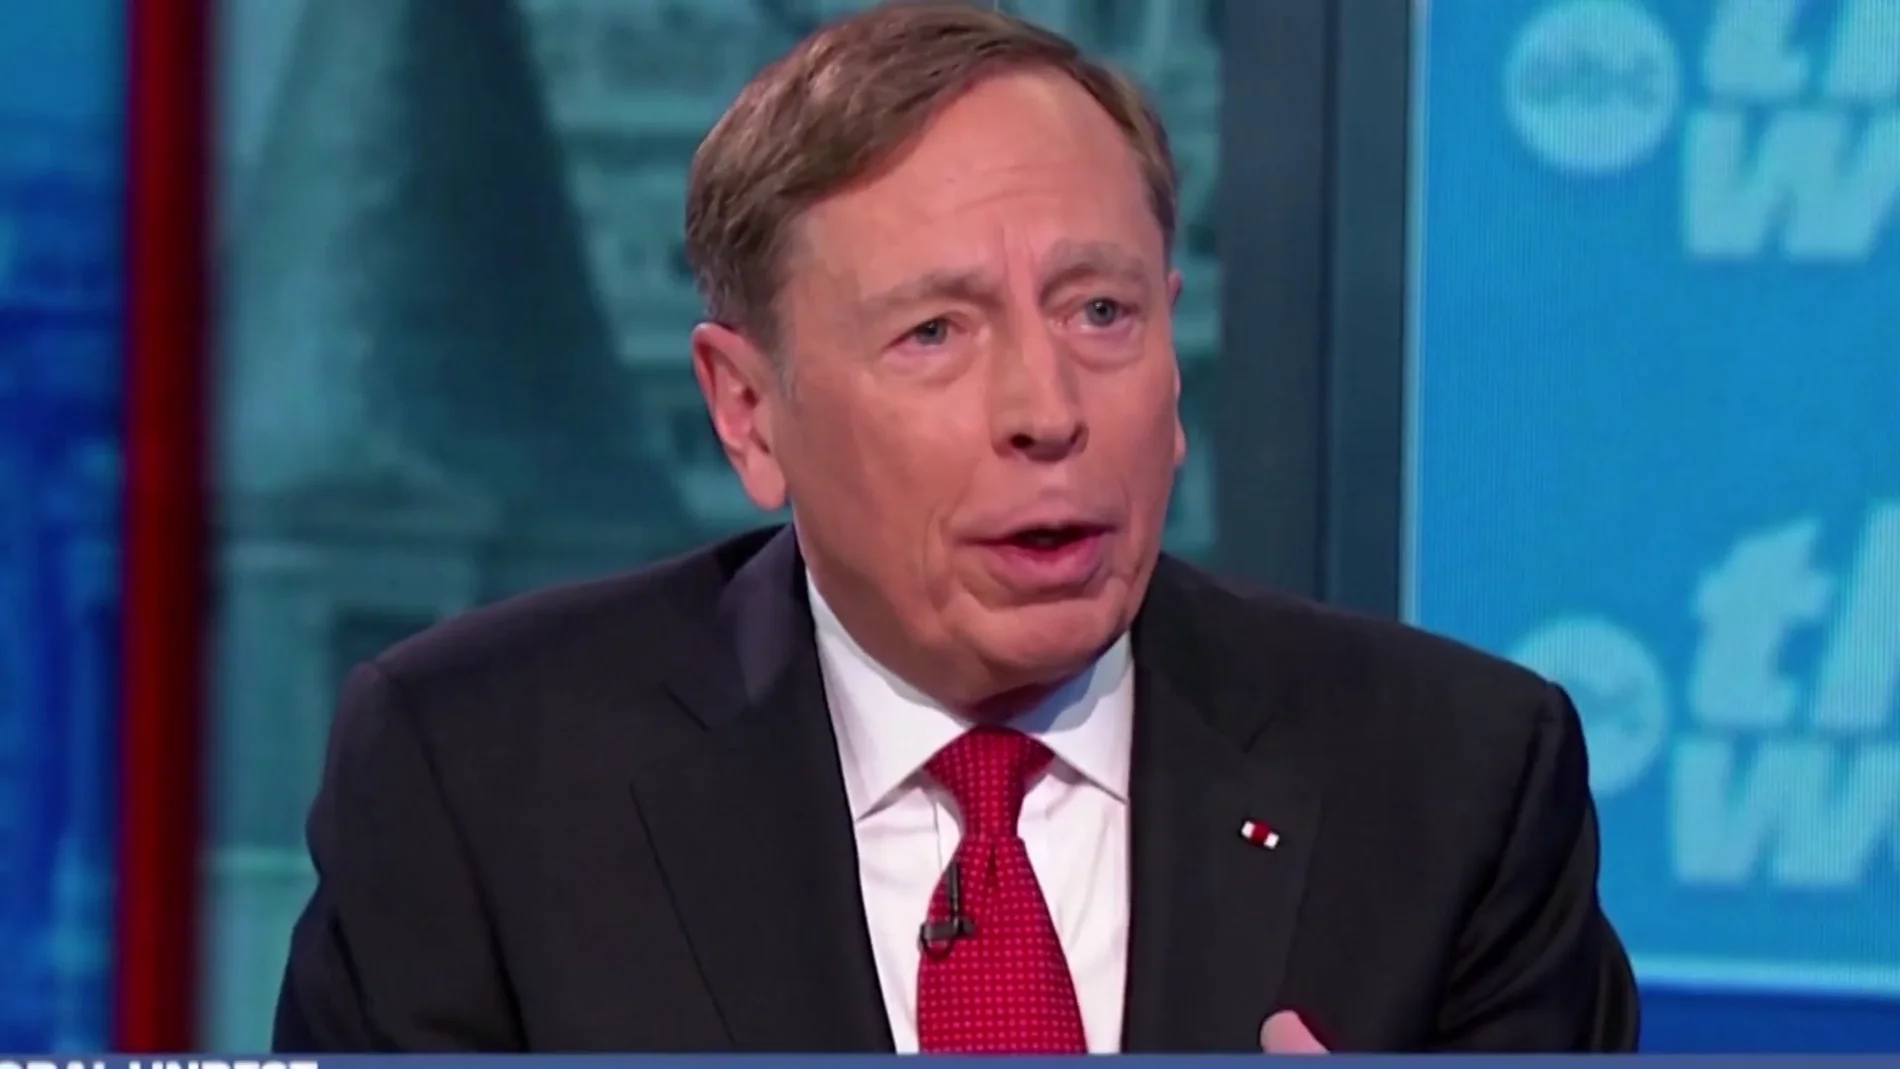 David Petraeus, exdirector de la CIA